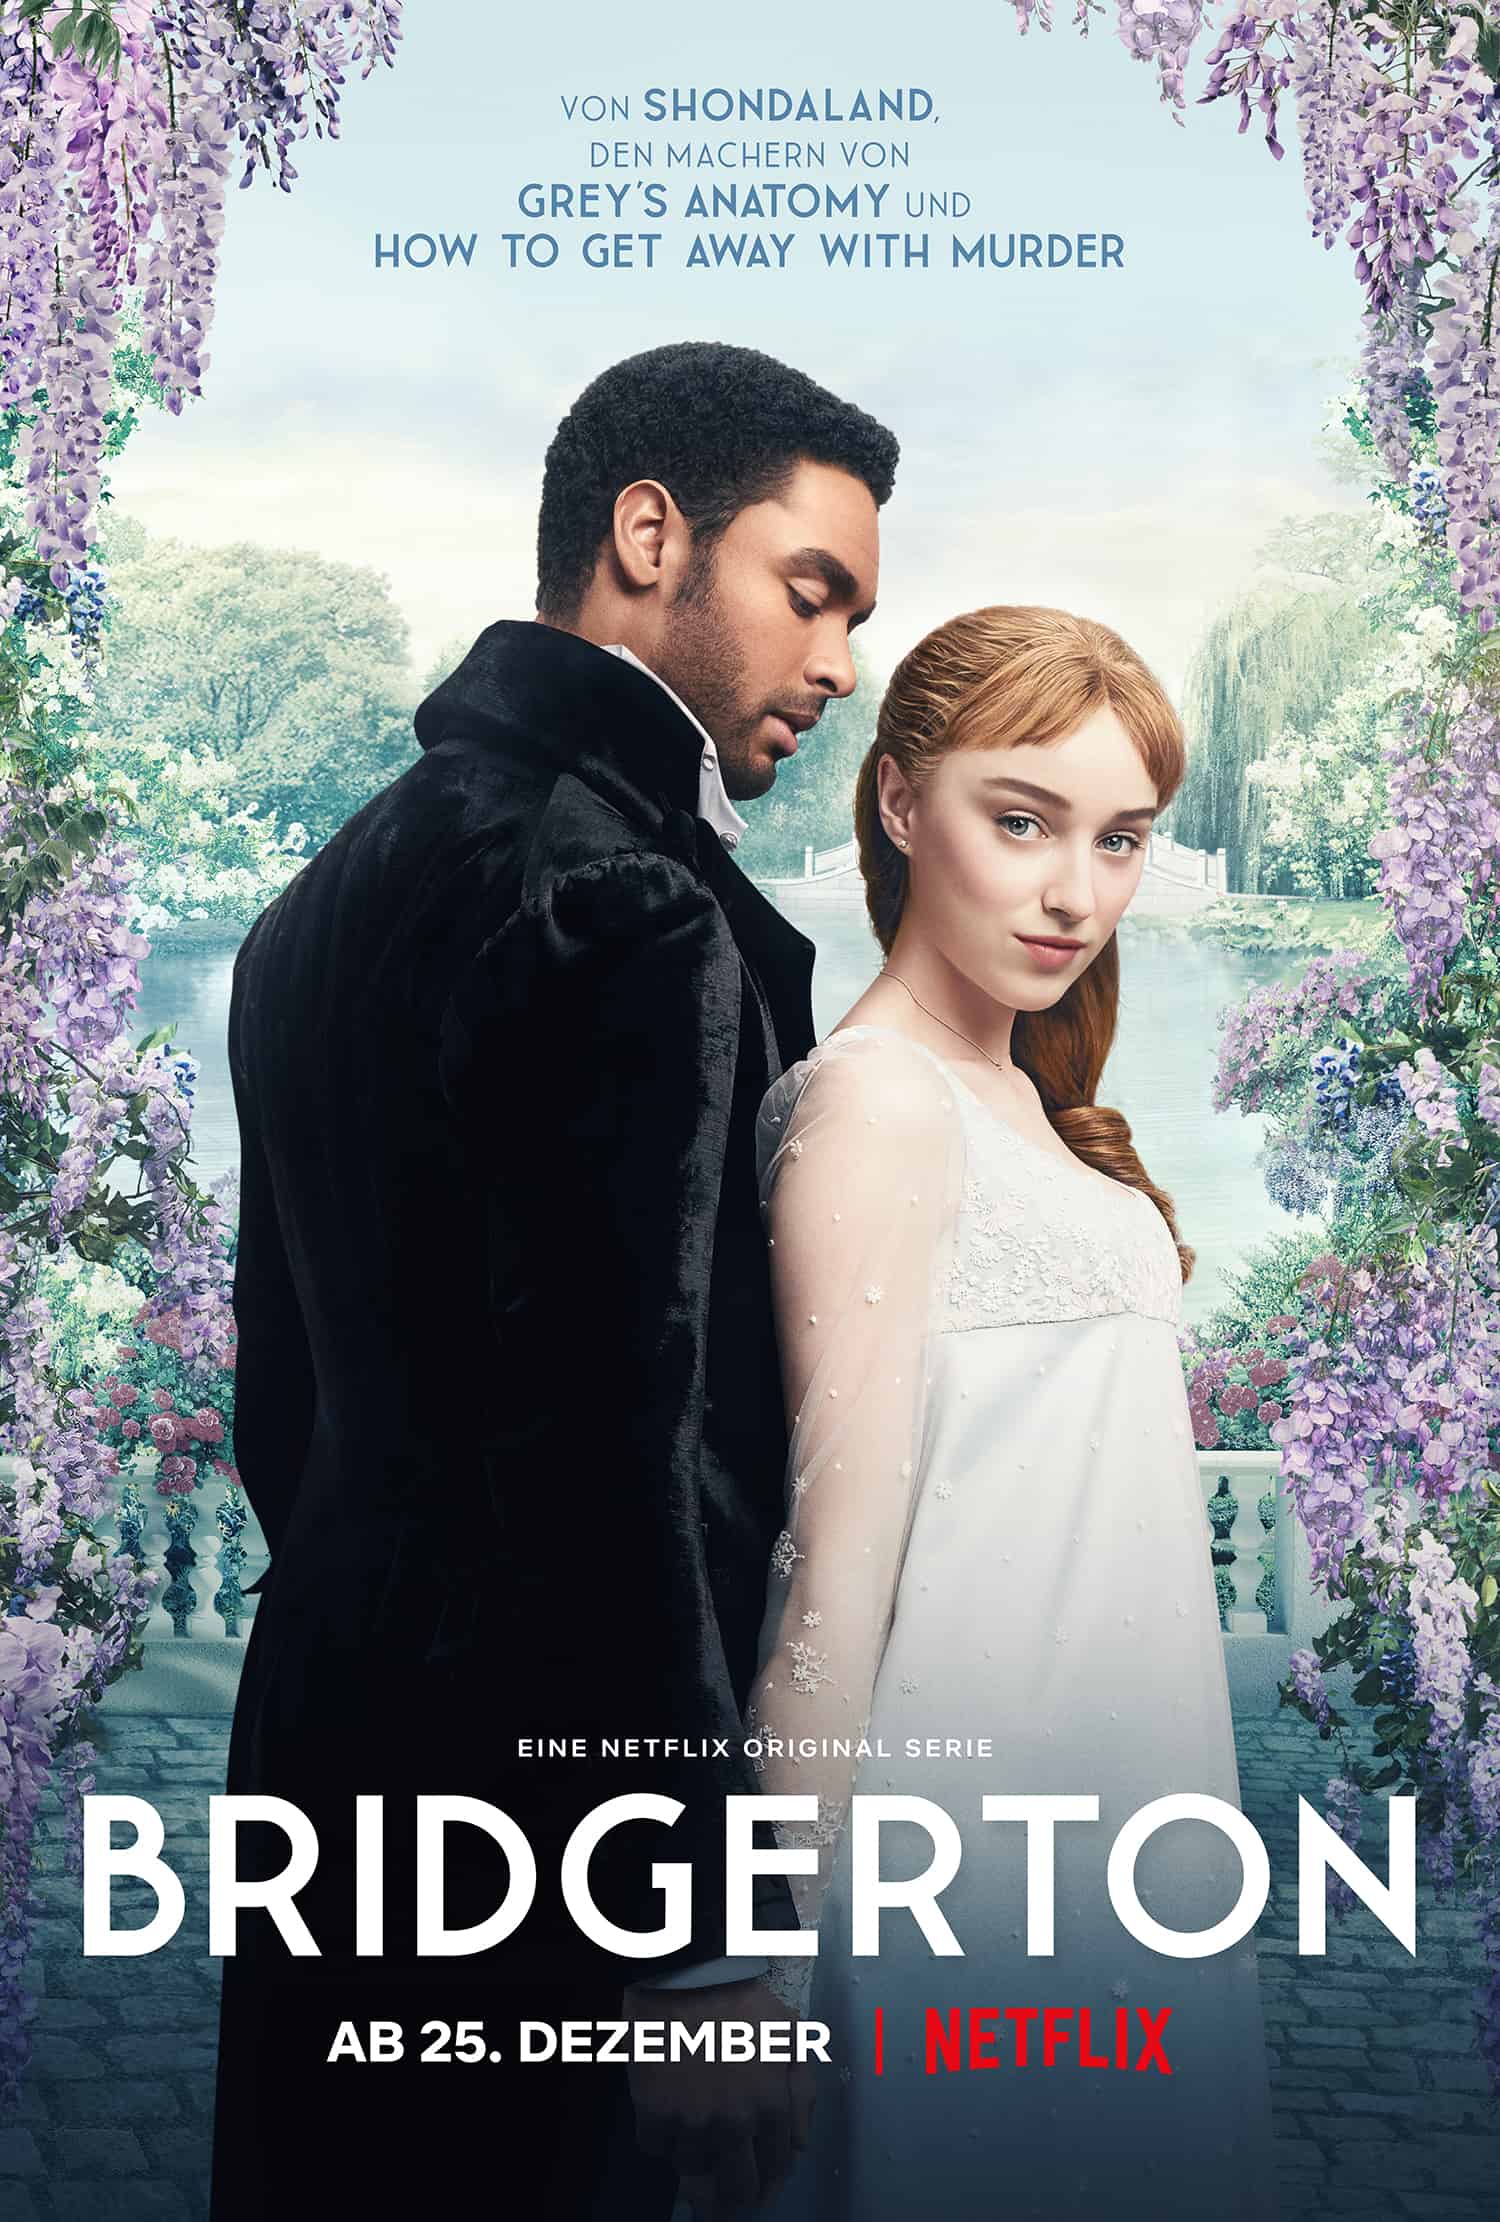 Poster zur Serie Bridgerton mit einem Mann und einer Frau in viktorianischen Kleidungsstil.